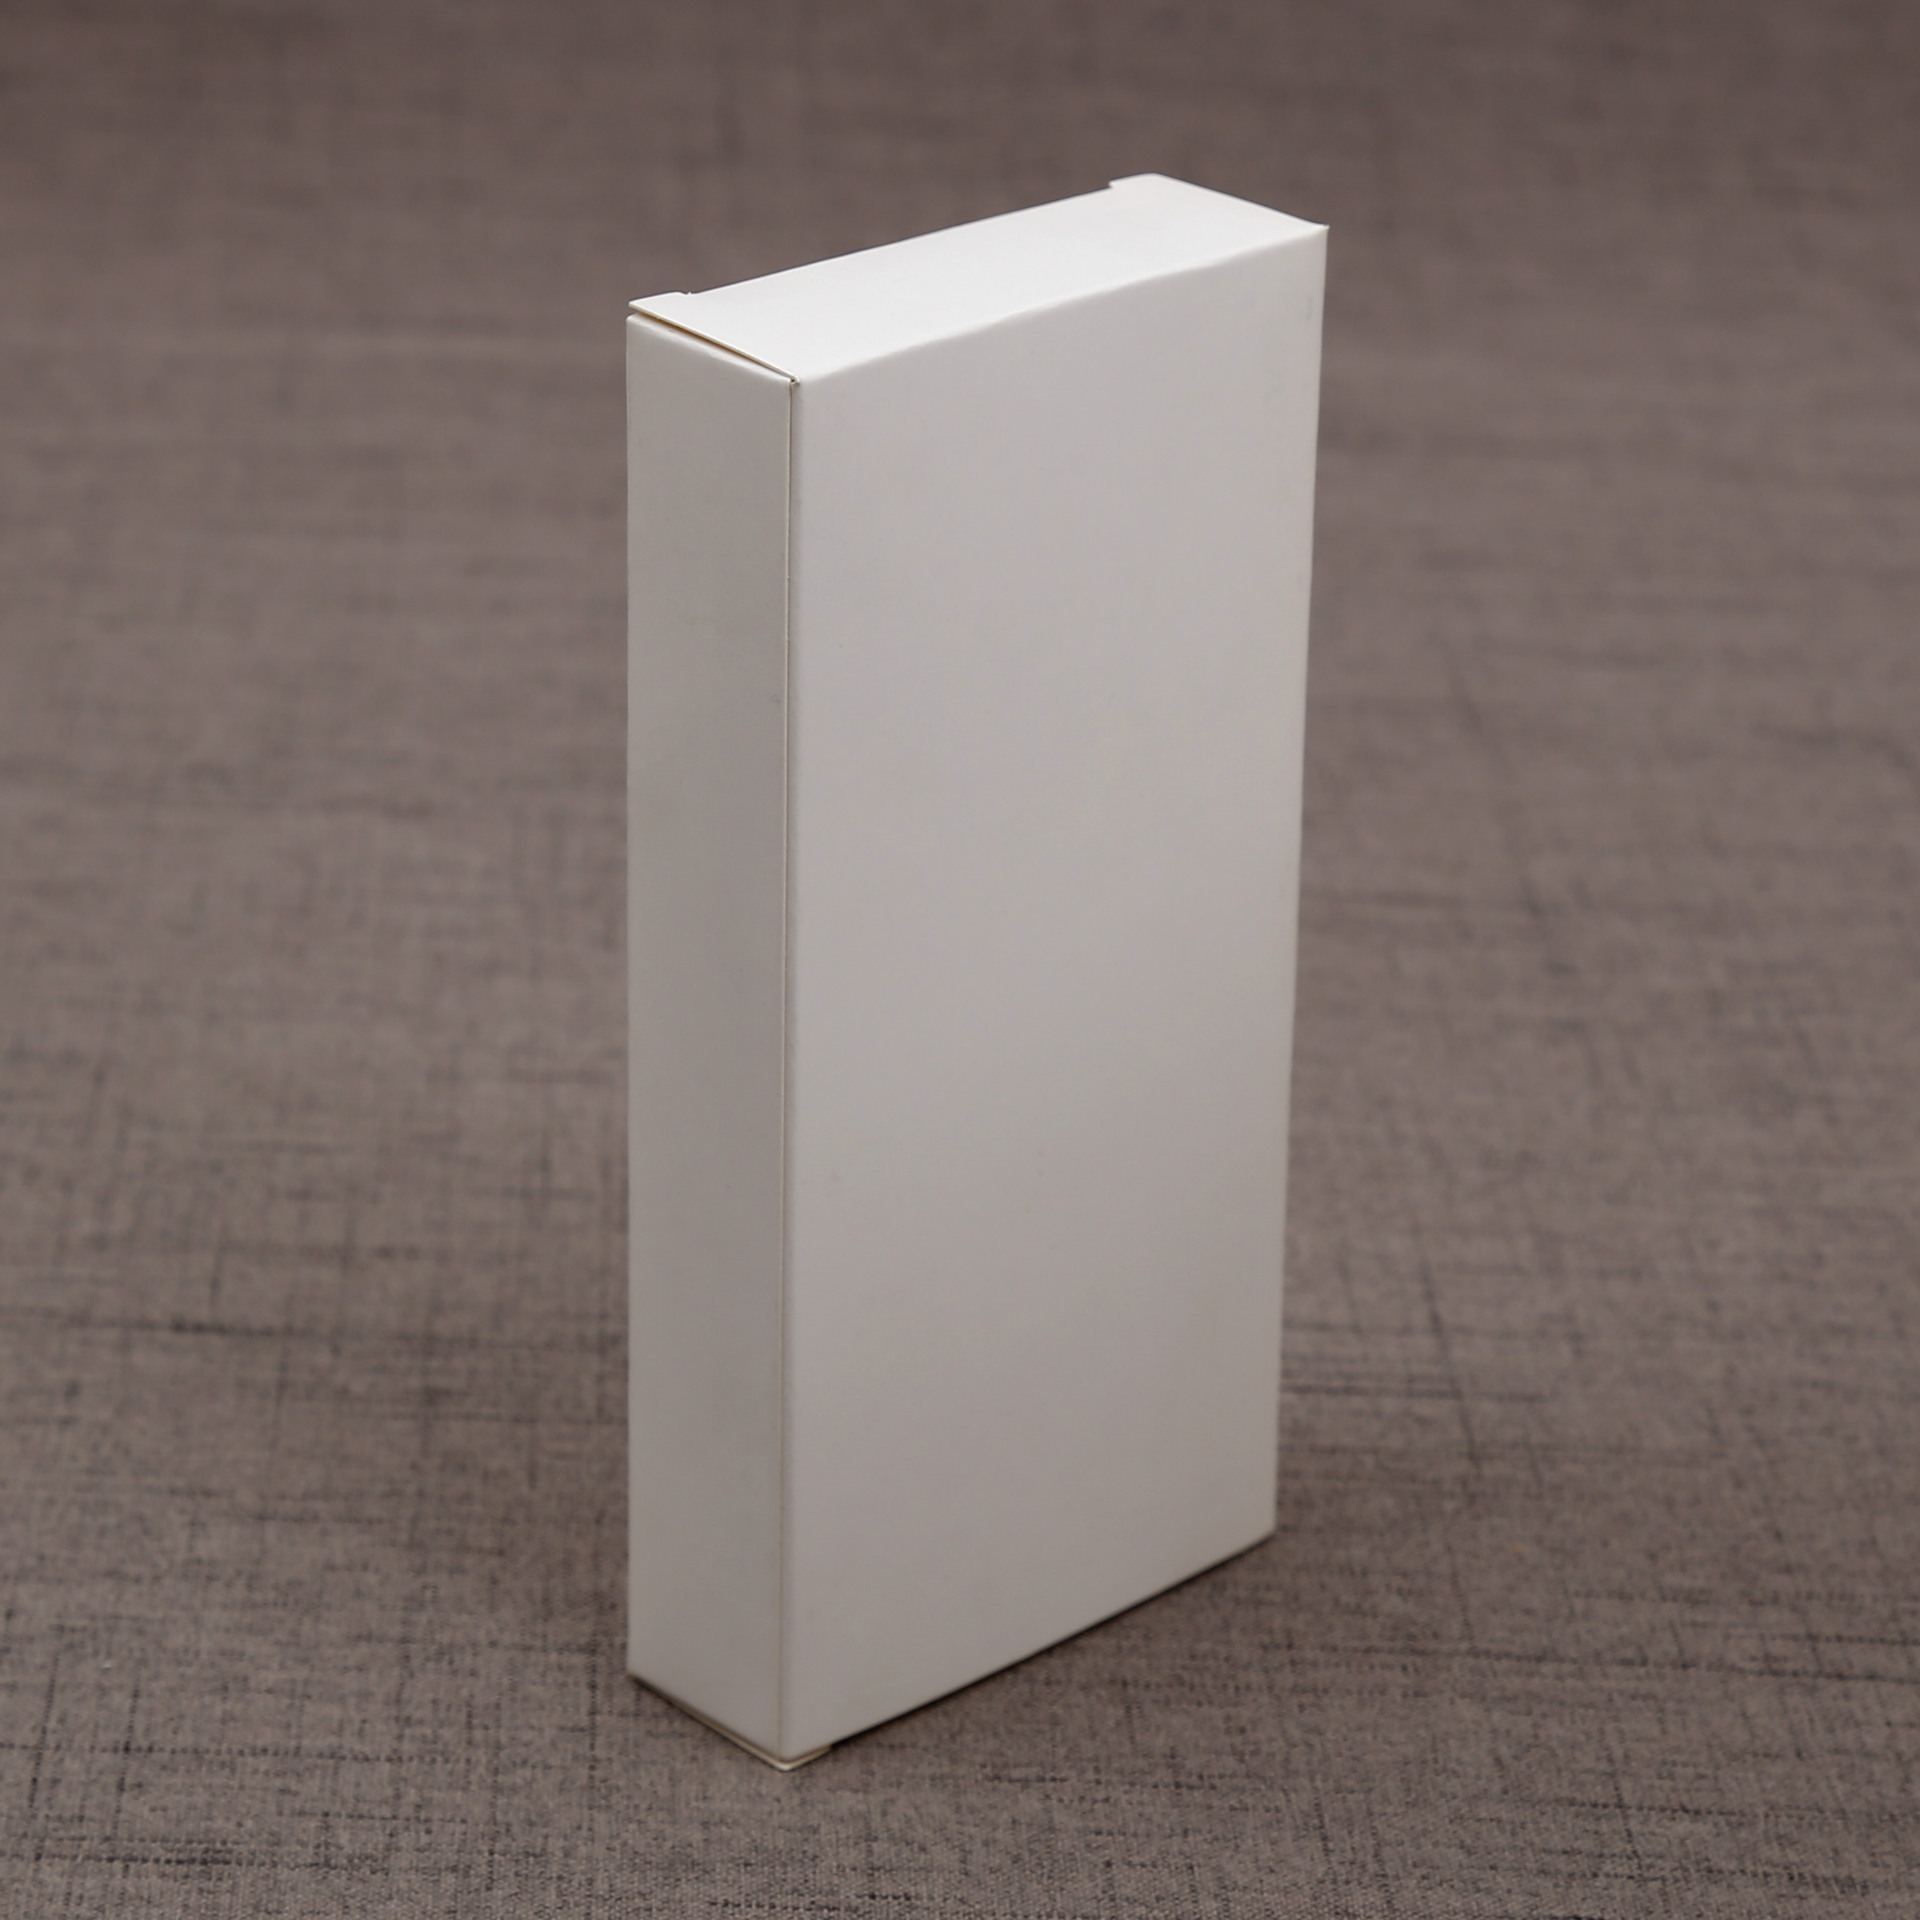 厂家直销空白文具折叠纸盒 白卡纸长方形通用包装纸盒